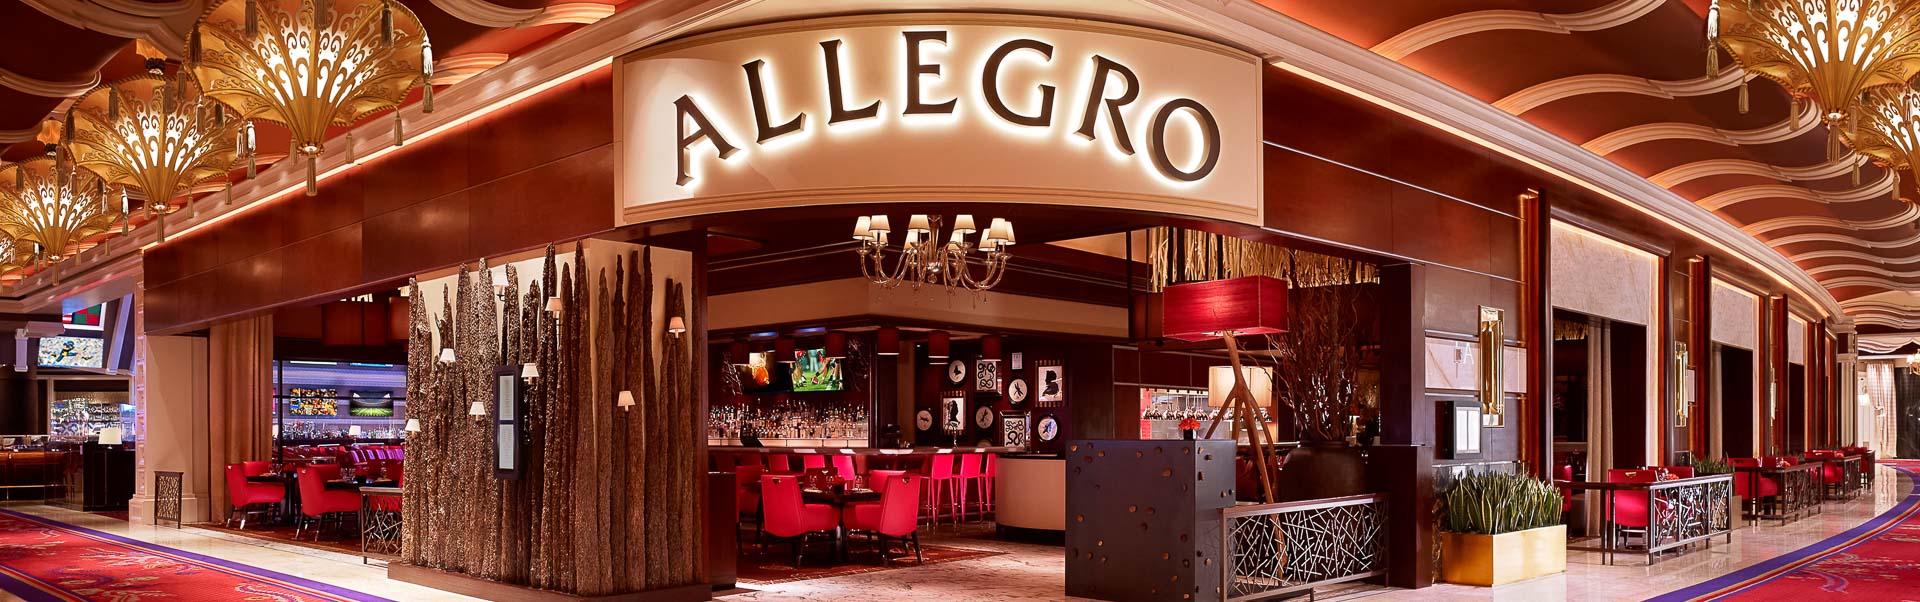 Las Vegas Casual Dining Restaurants | Allegro | Wynn Las Vegas